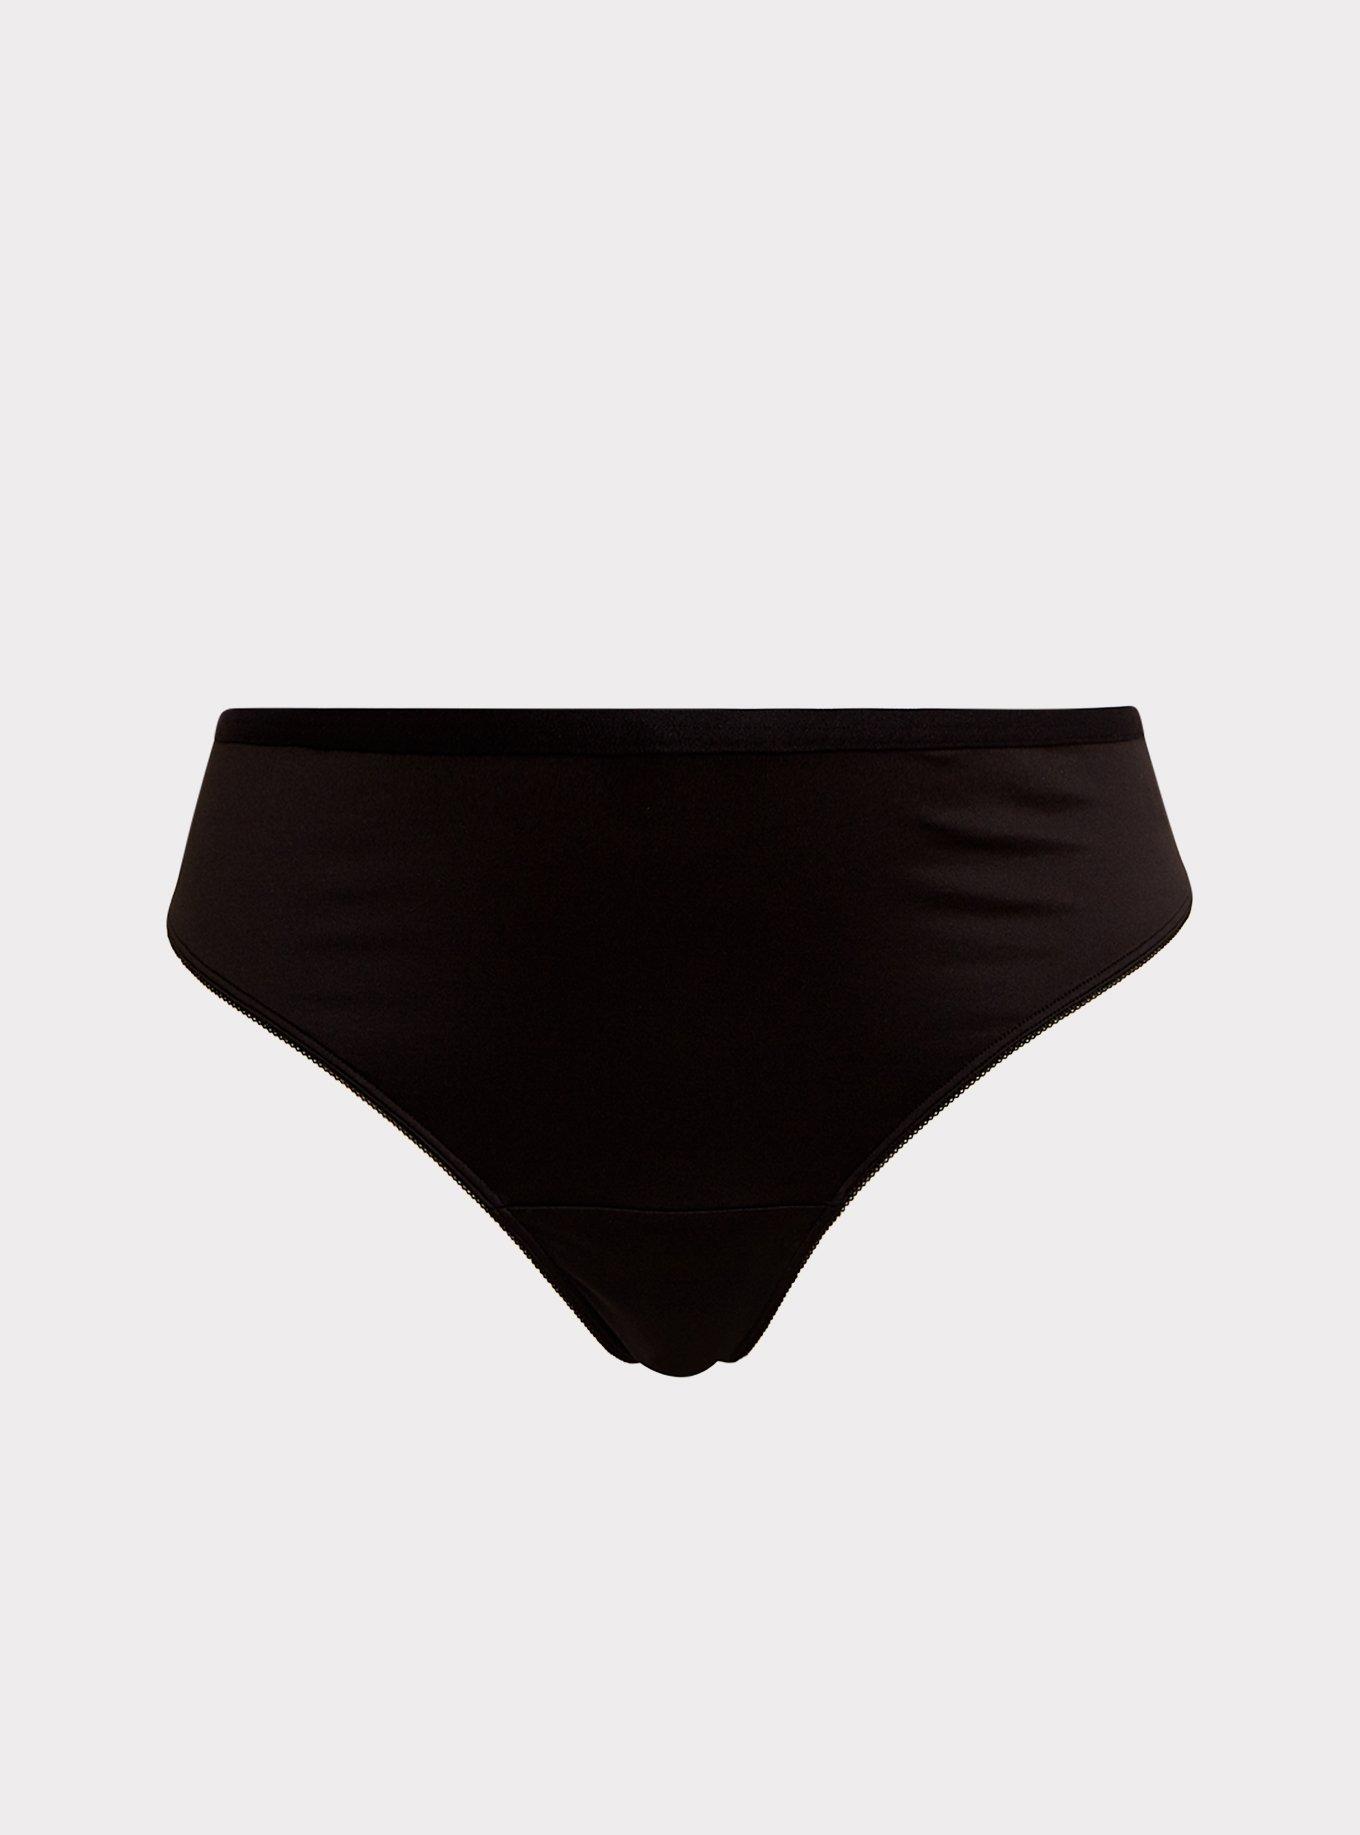 Microfiber Sleek Back High Waist Bikini Panty - Black